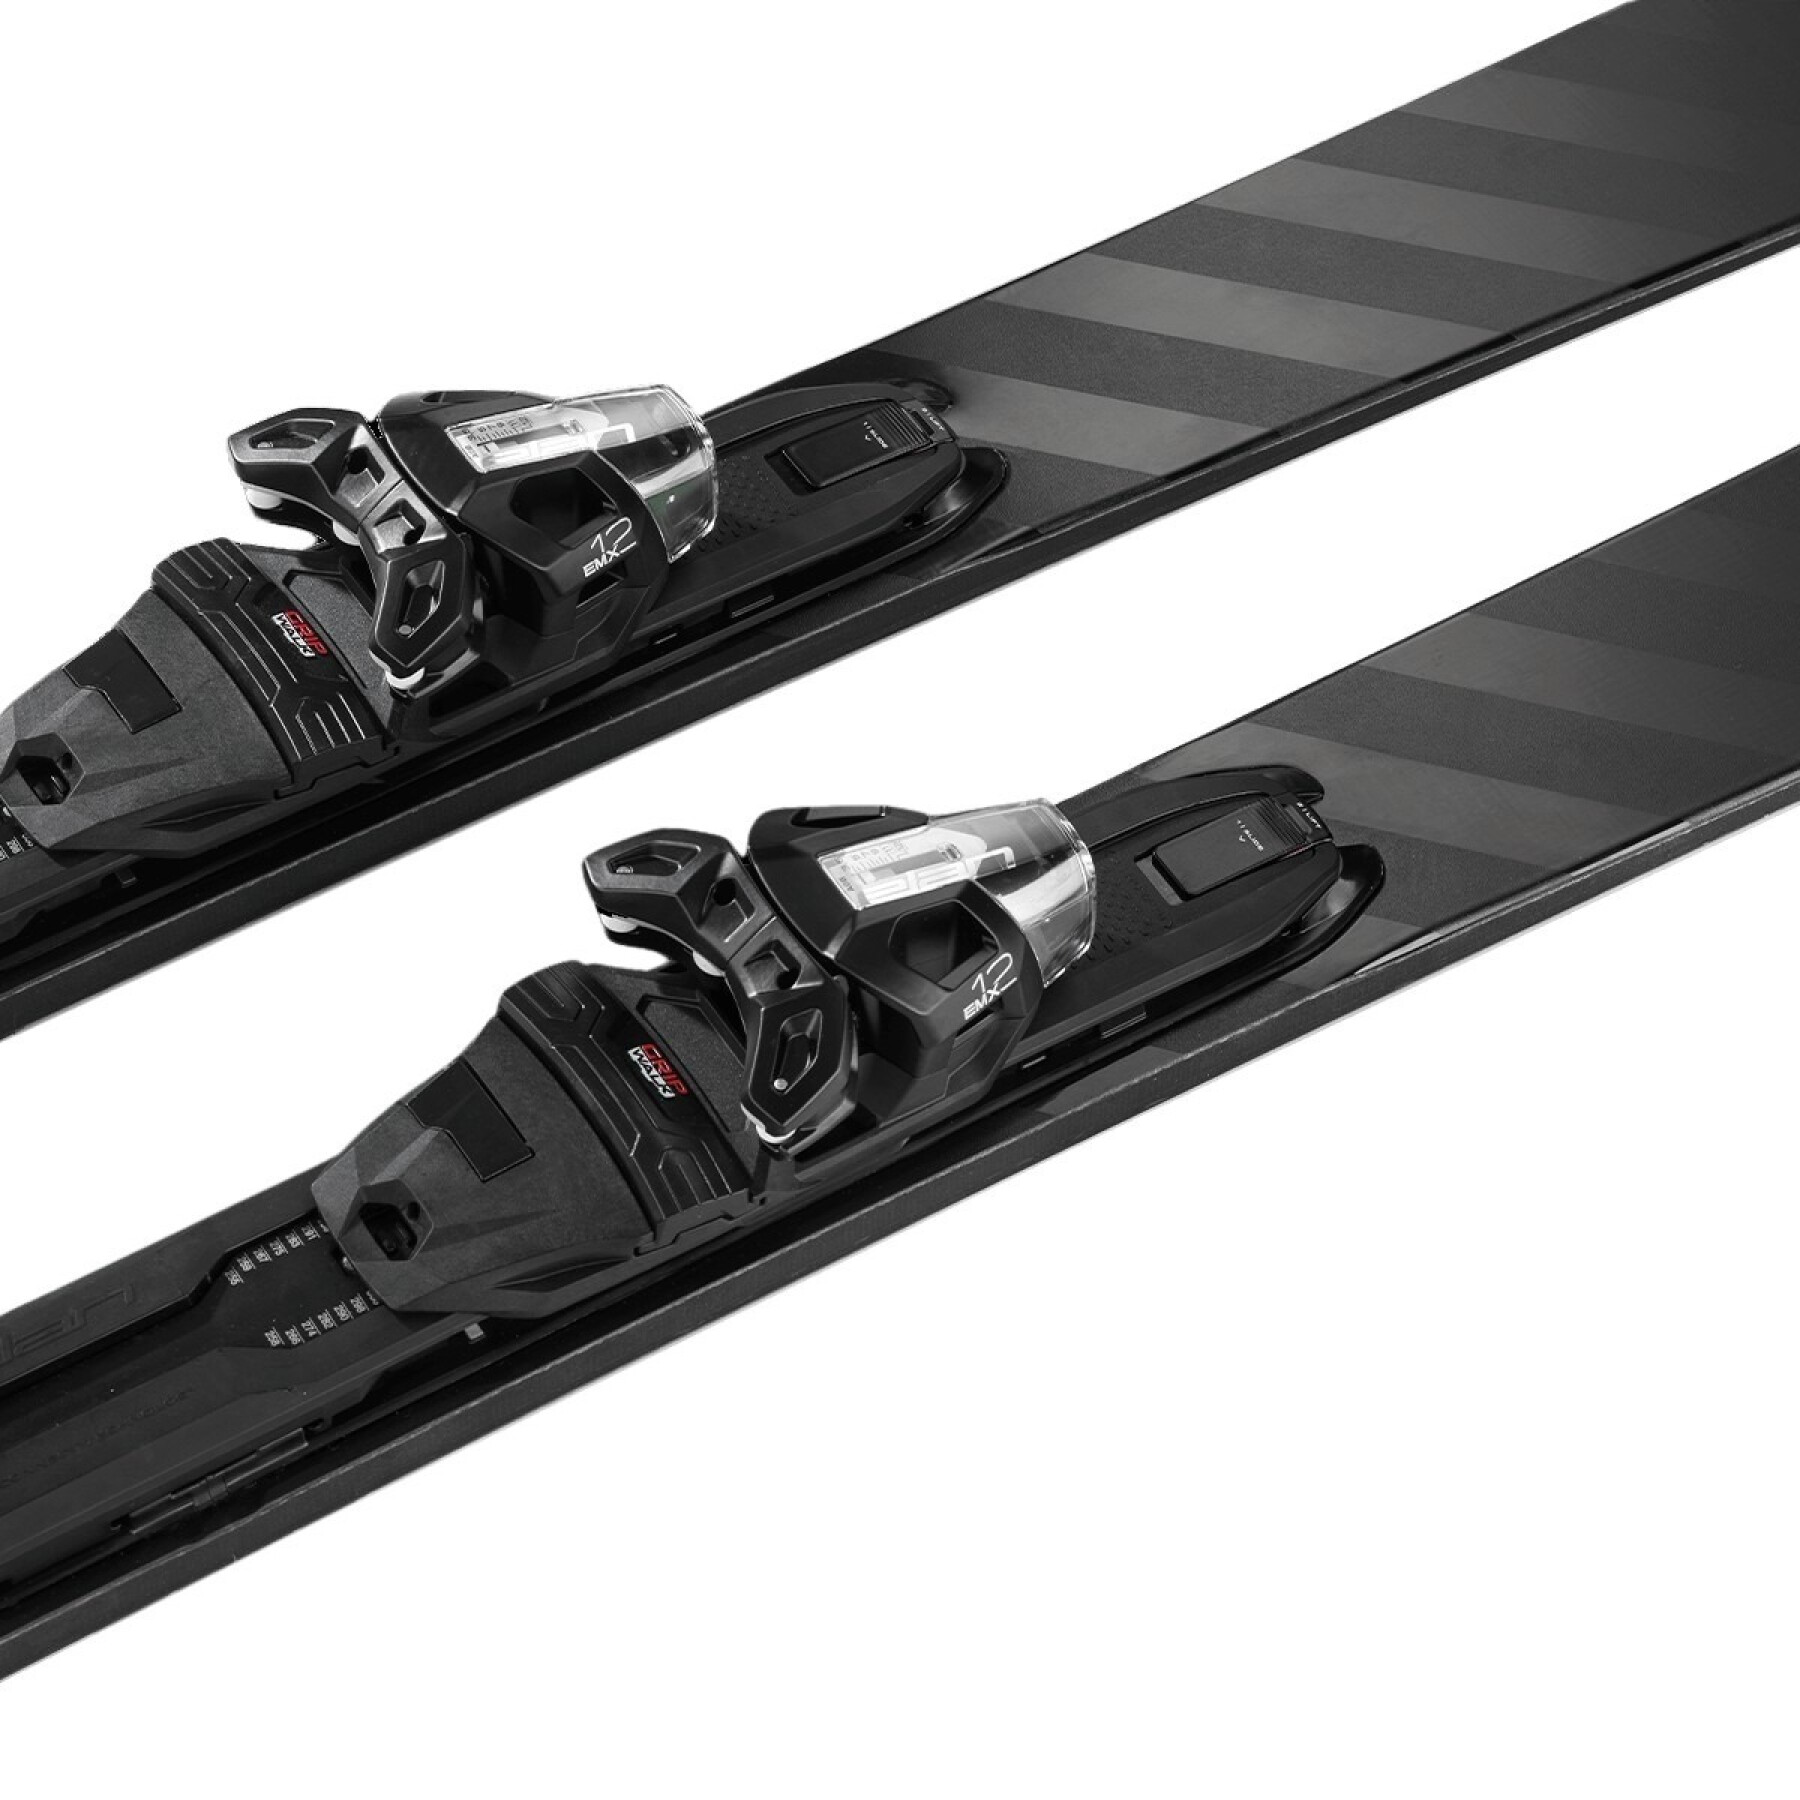 Travel ski pack with bindings Elan